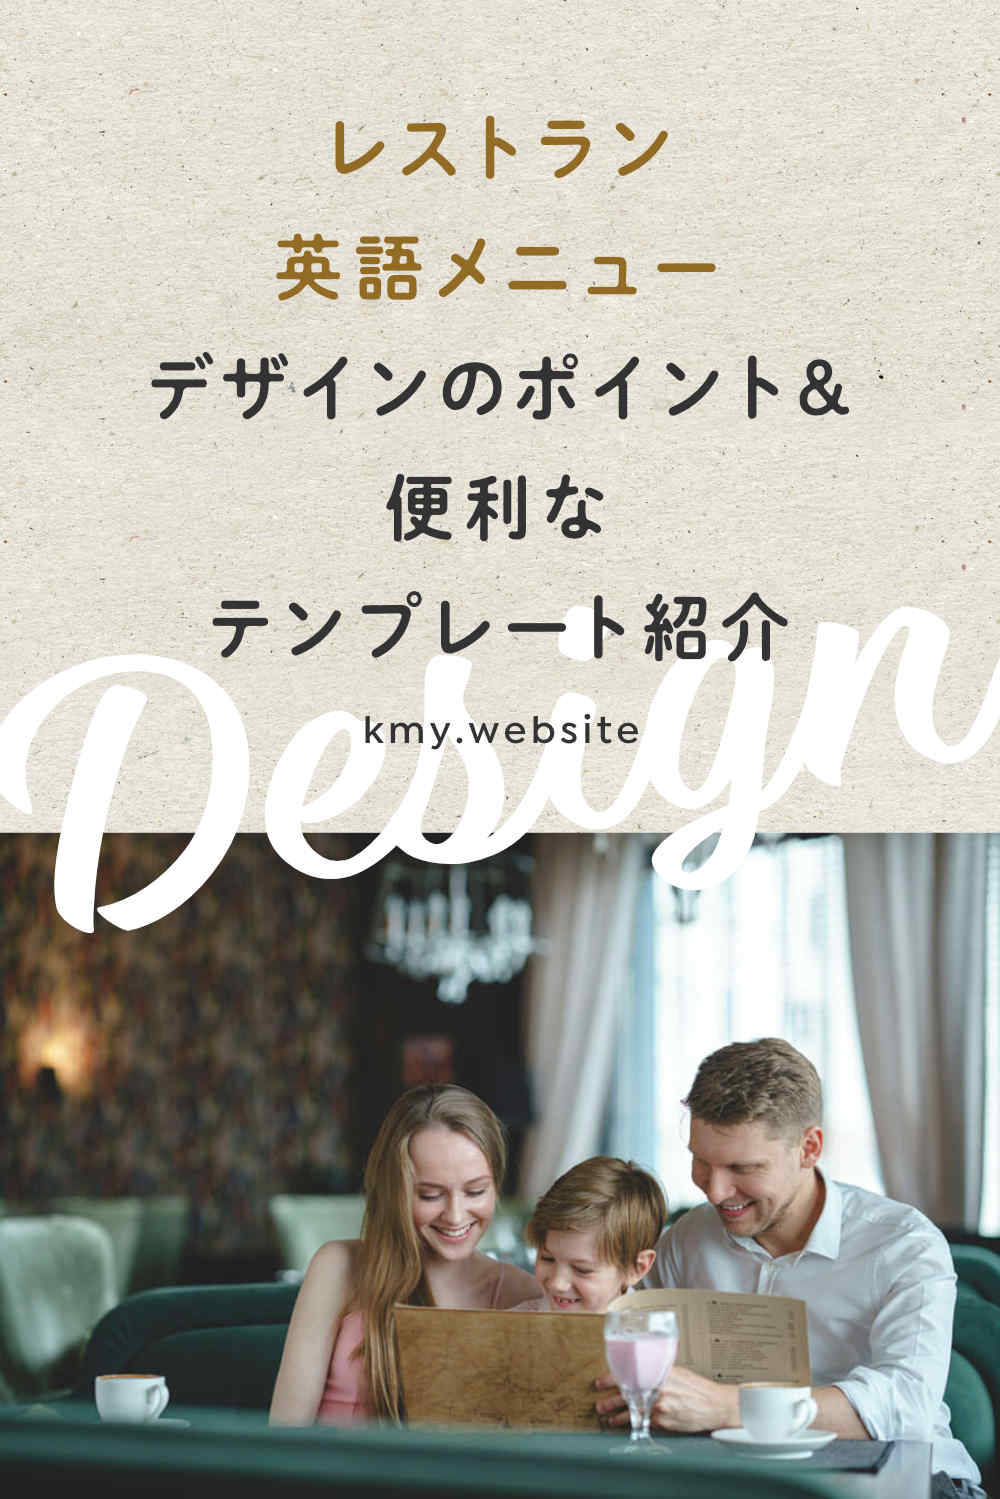 レストラン英語メニューデザインのポイント&便利なテンプレート紹介